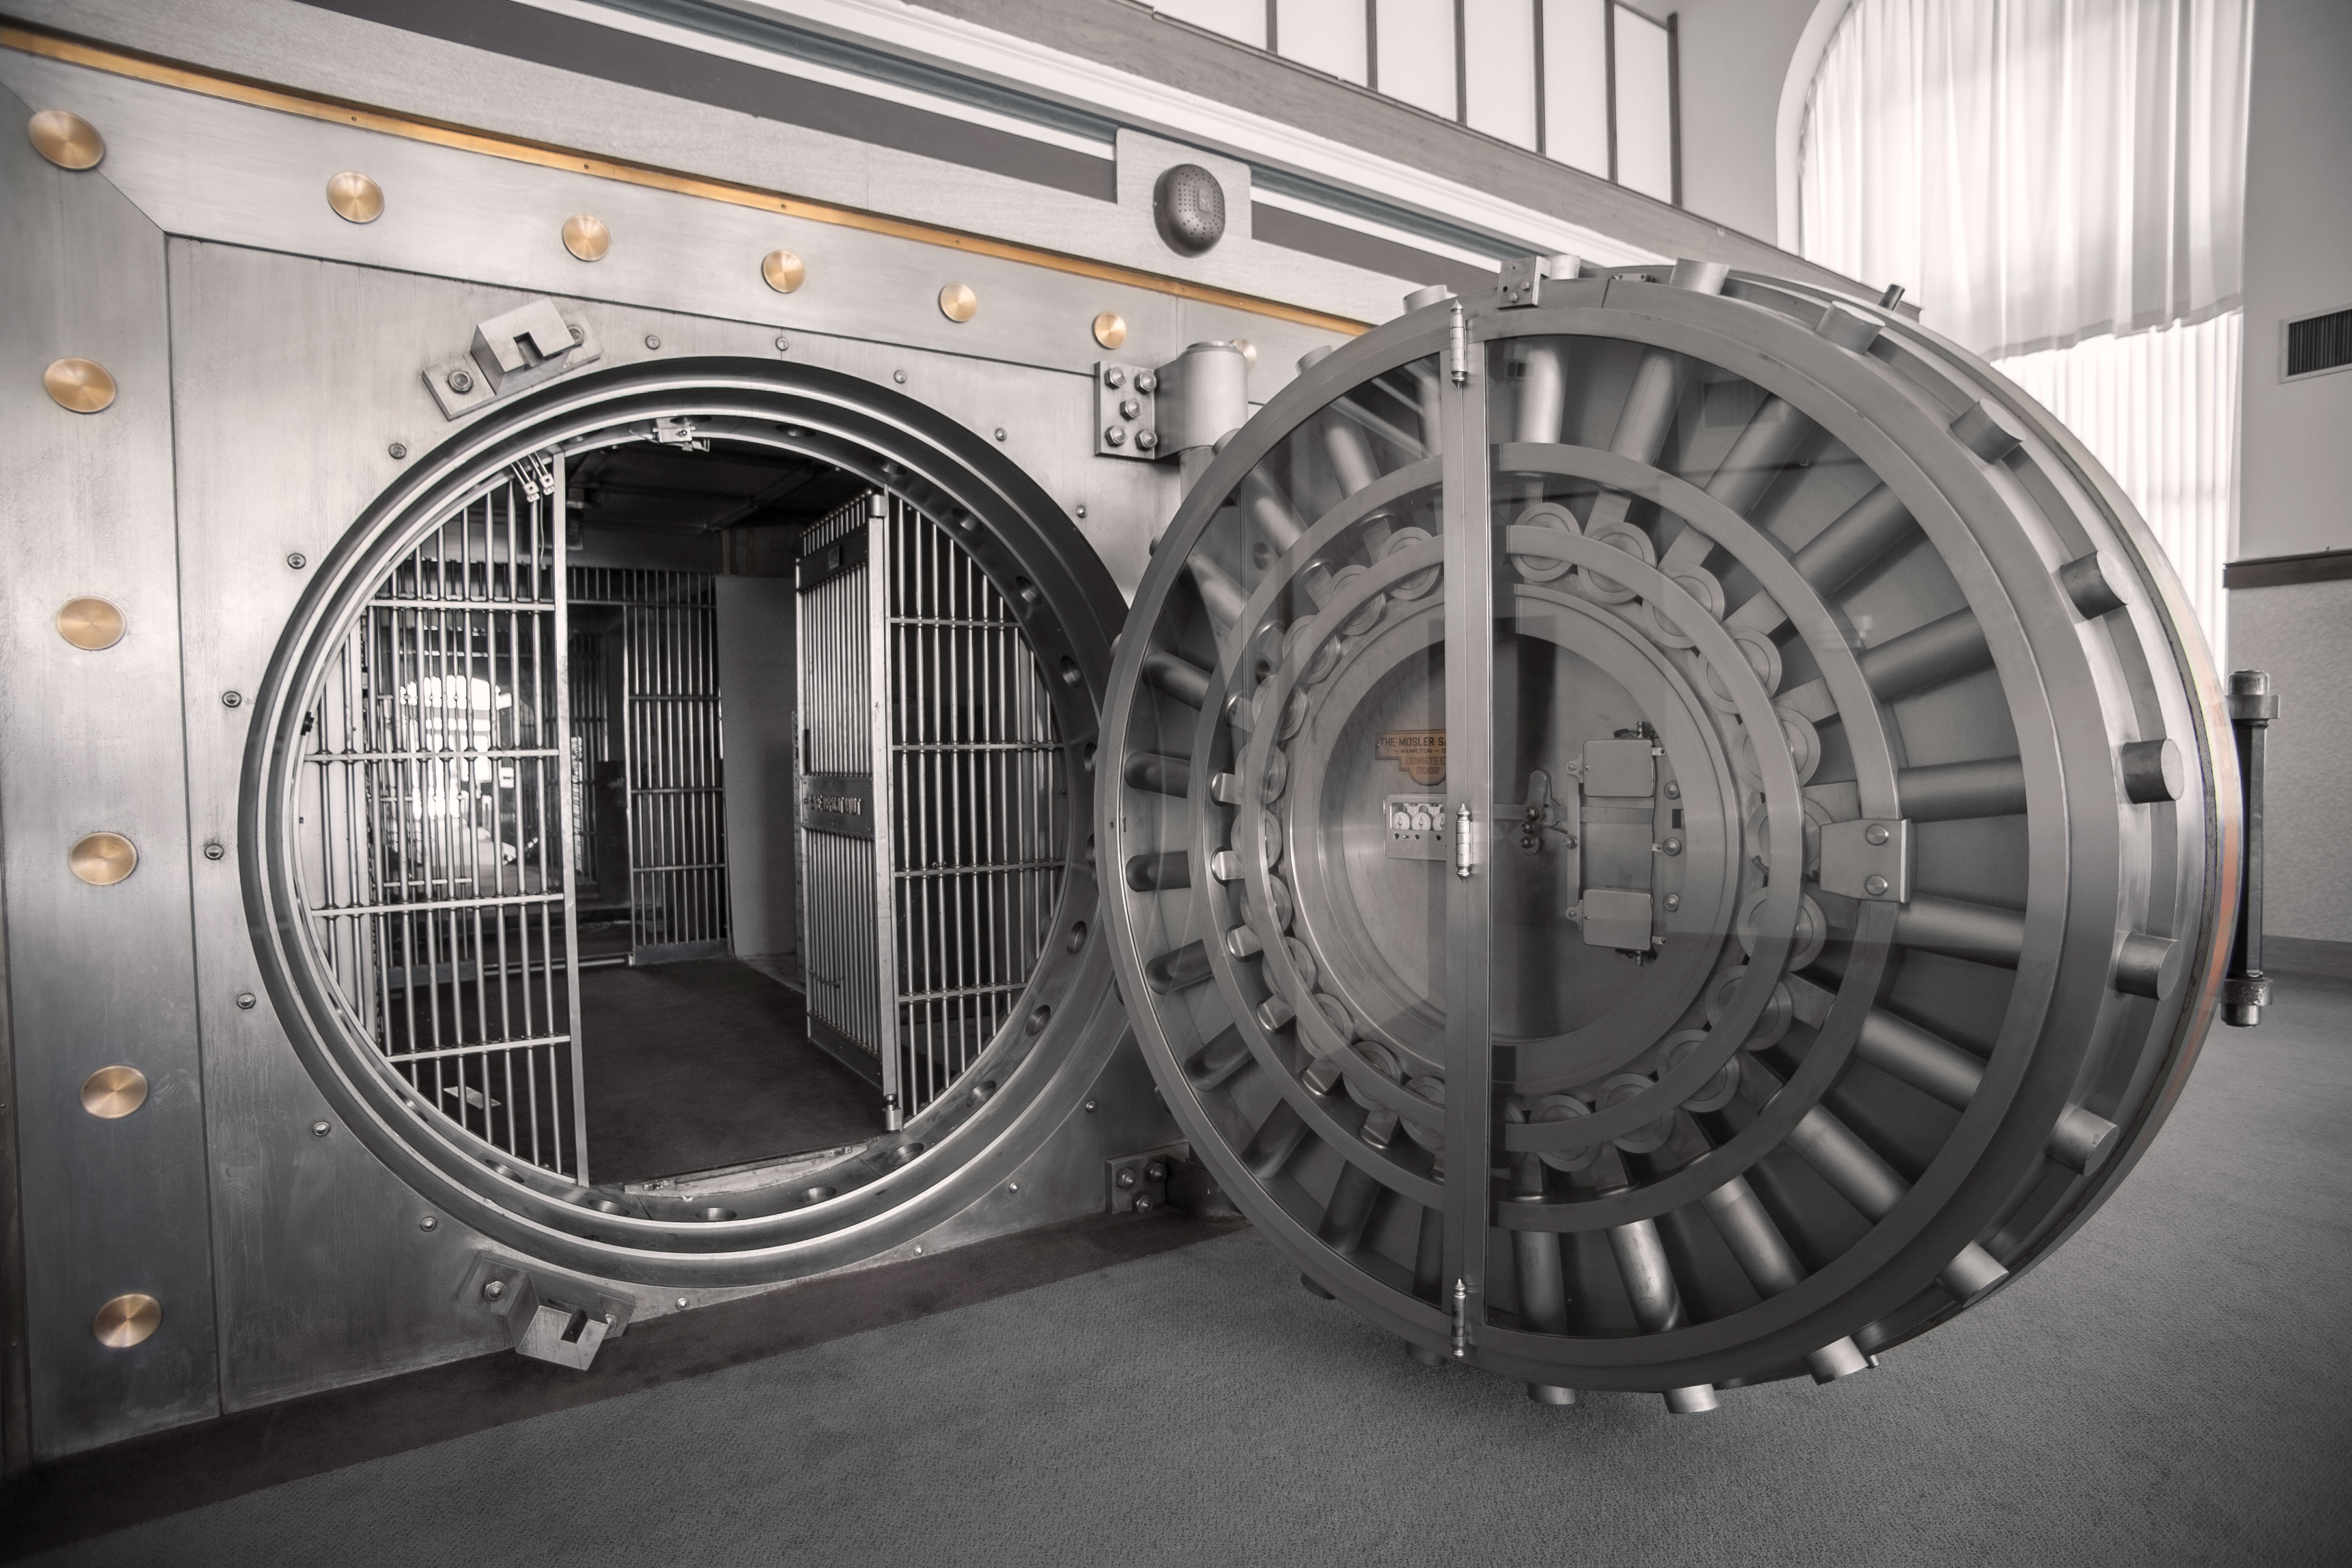 Bank vaults. Хранилище the Vault. Дверь банковского хранилища. Банковский сейф. Банковское хранилище с круглой дверь.